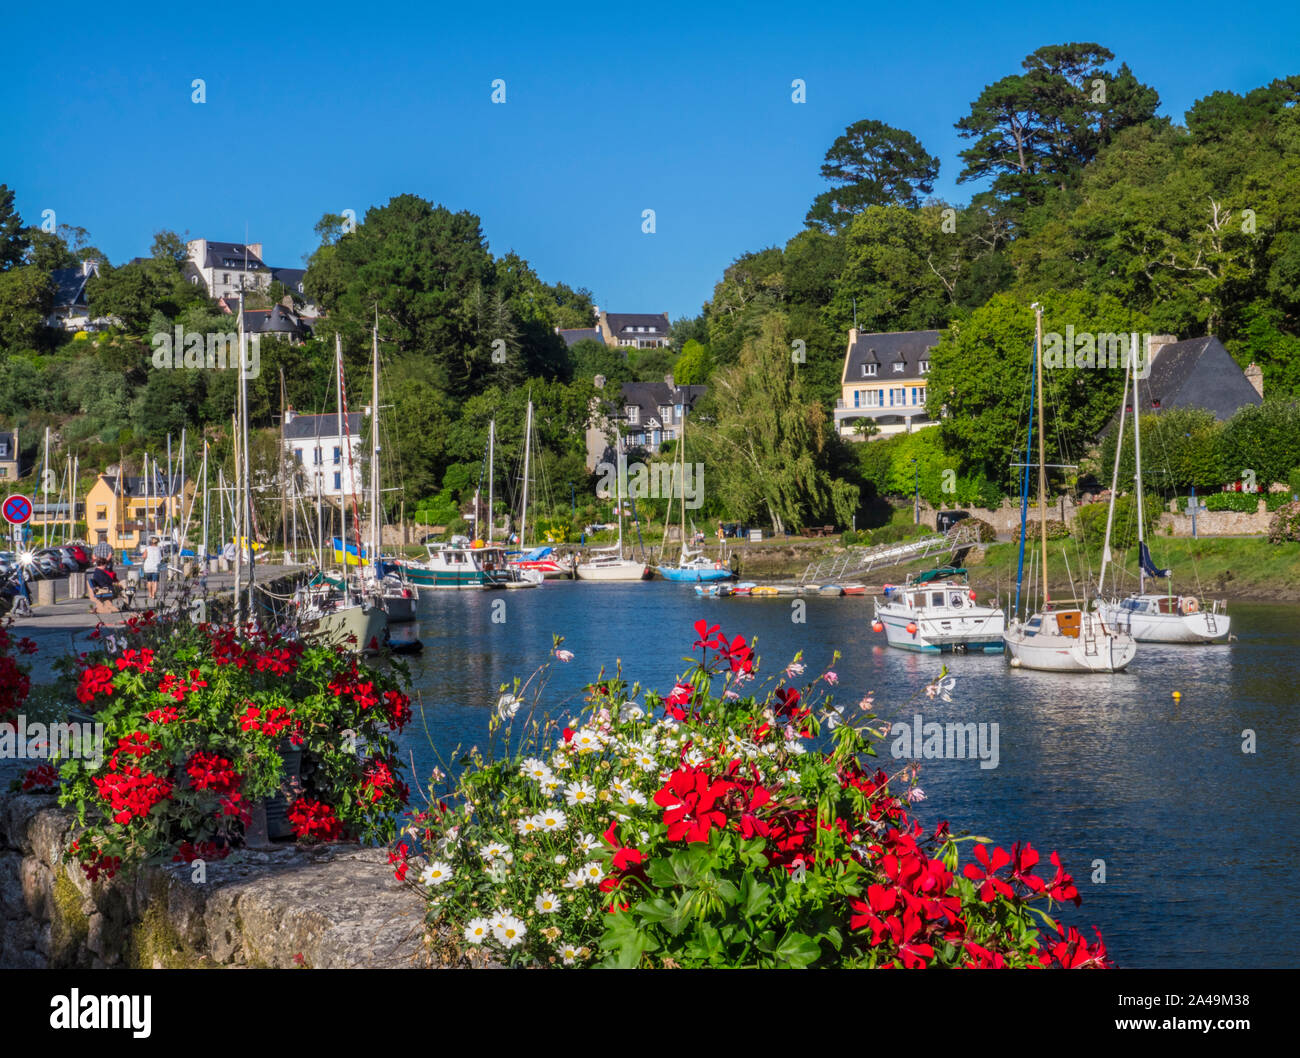 Pont-Aven Brittany floral sunny scena di paesaggio con barche a vela e le case sulle rive del fiume Aven dipartimento di Finistère Bretagna Francia Foto Stock